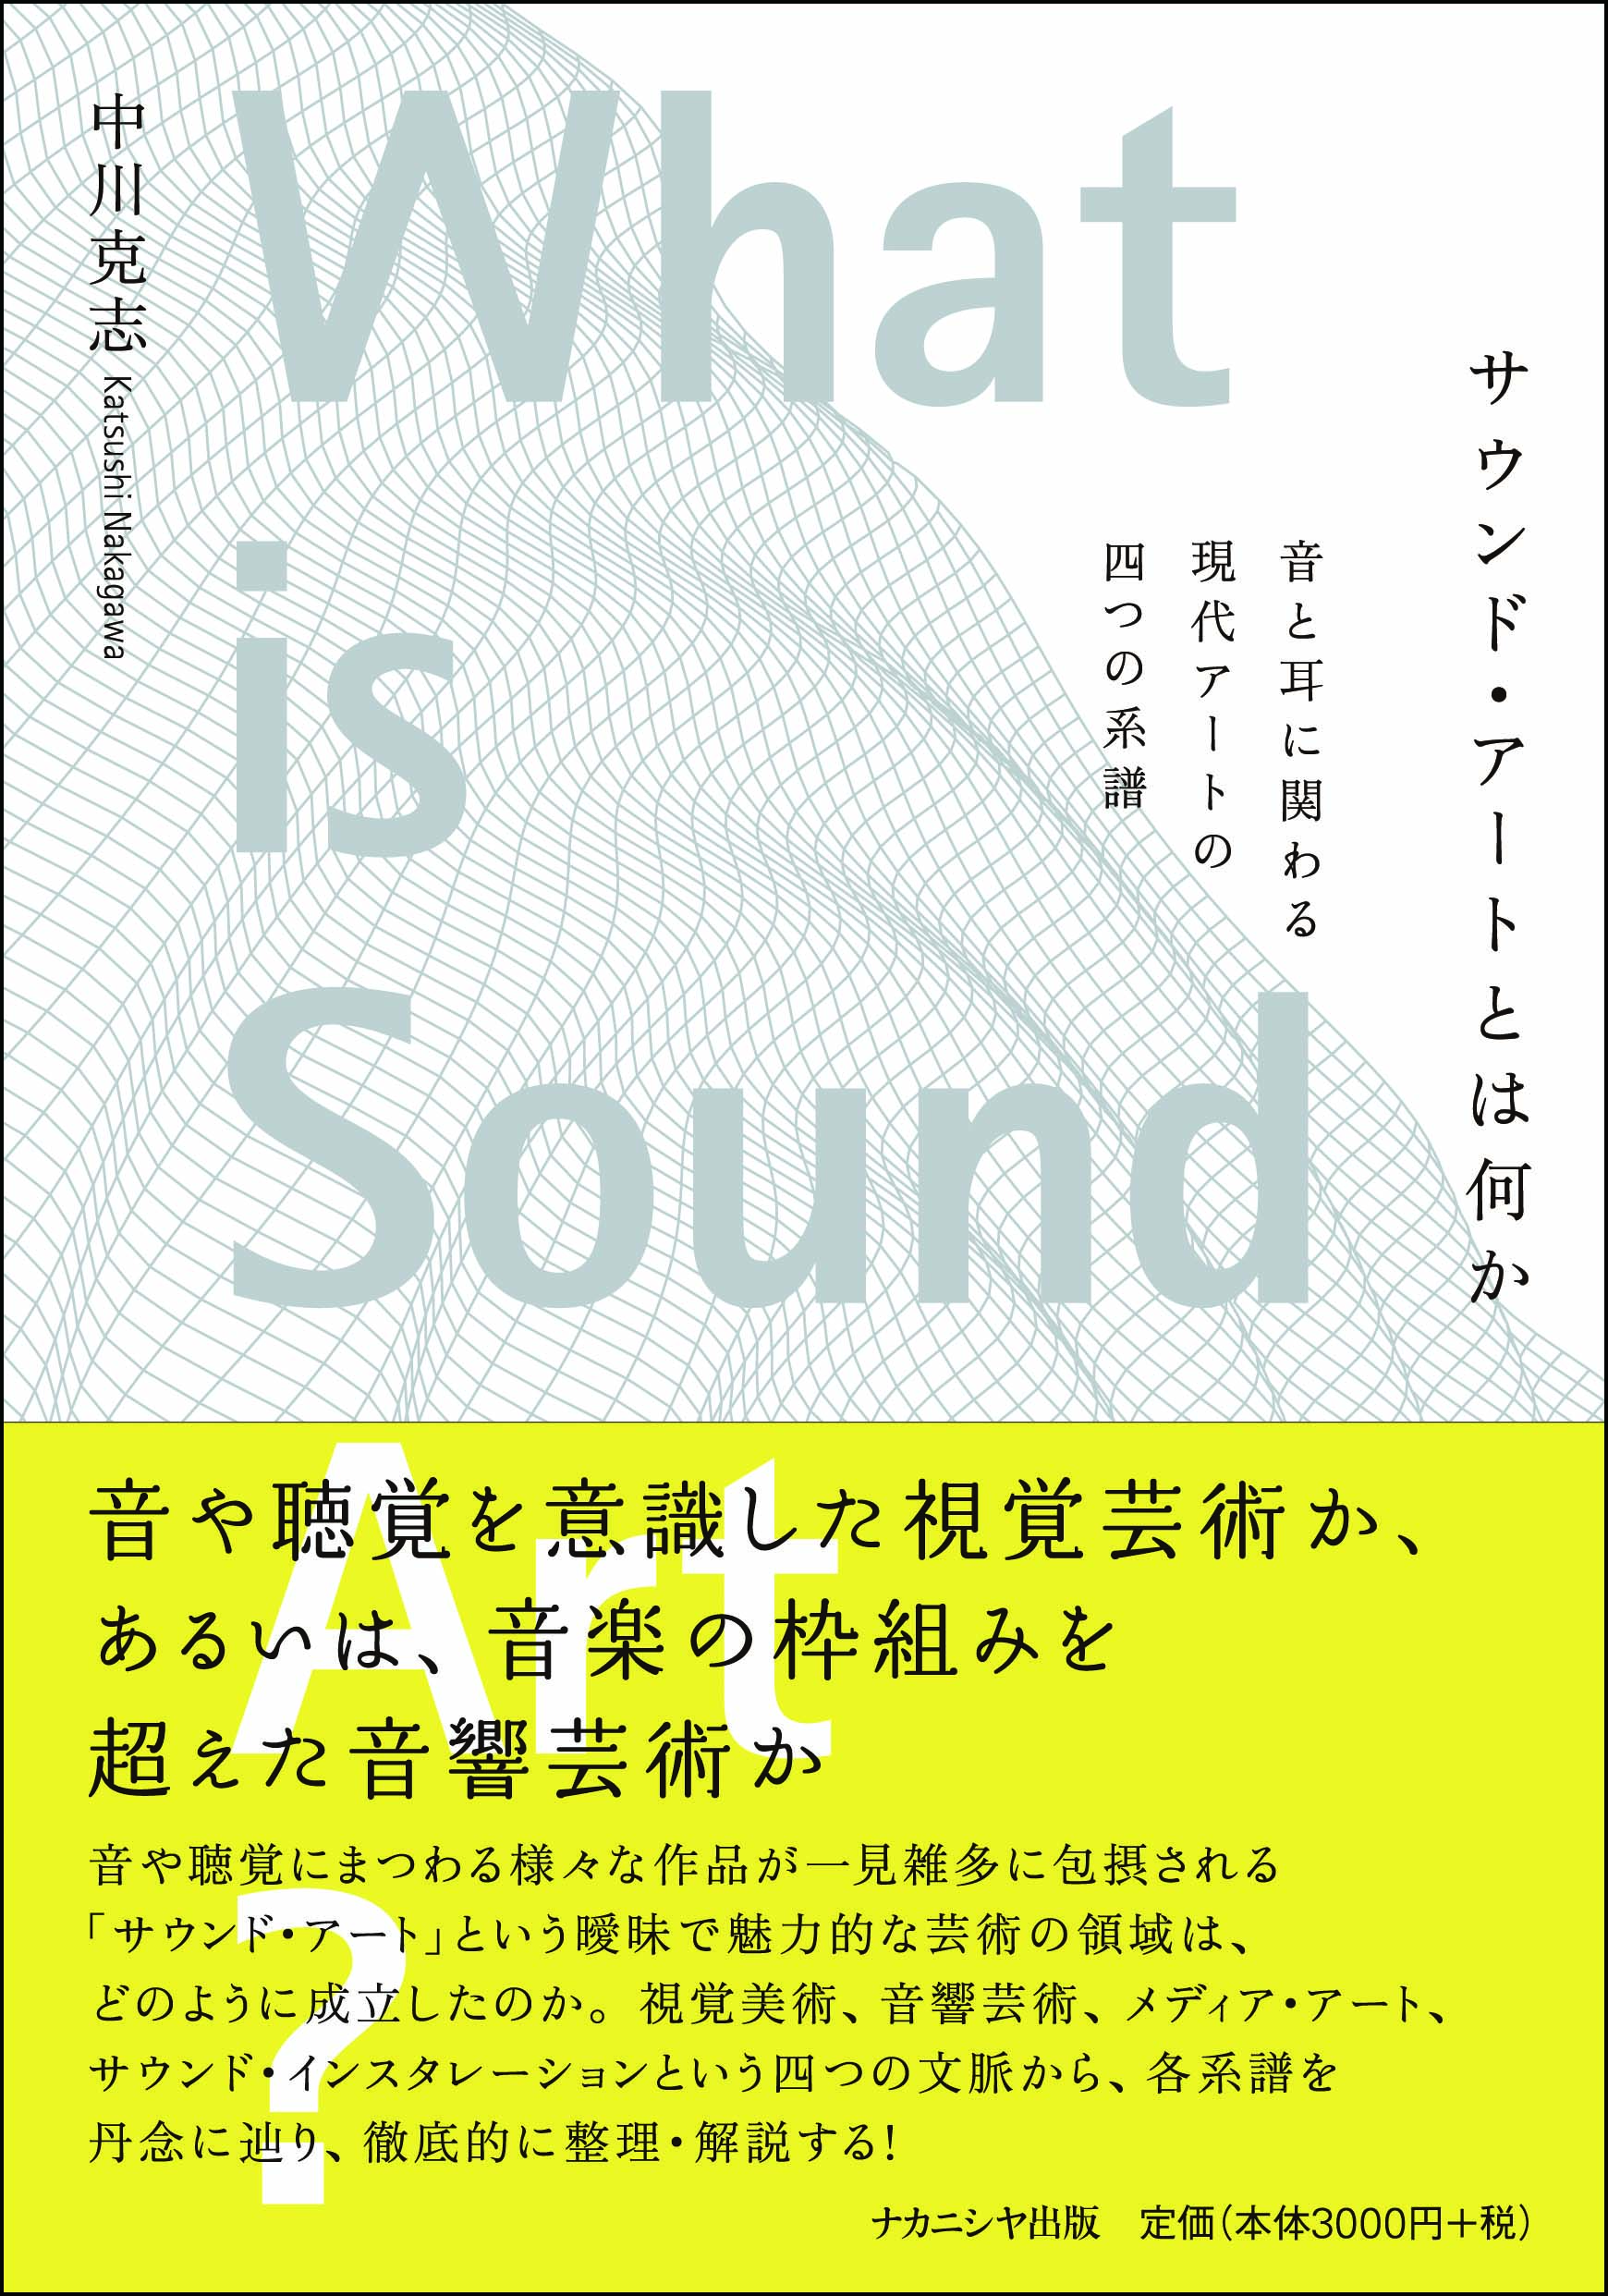 中川克志准教授の単著による『サウンド・アートとは何か』が出版されました。